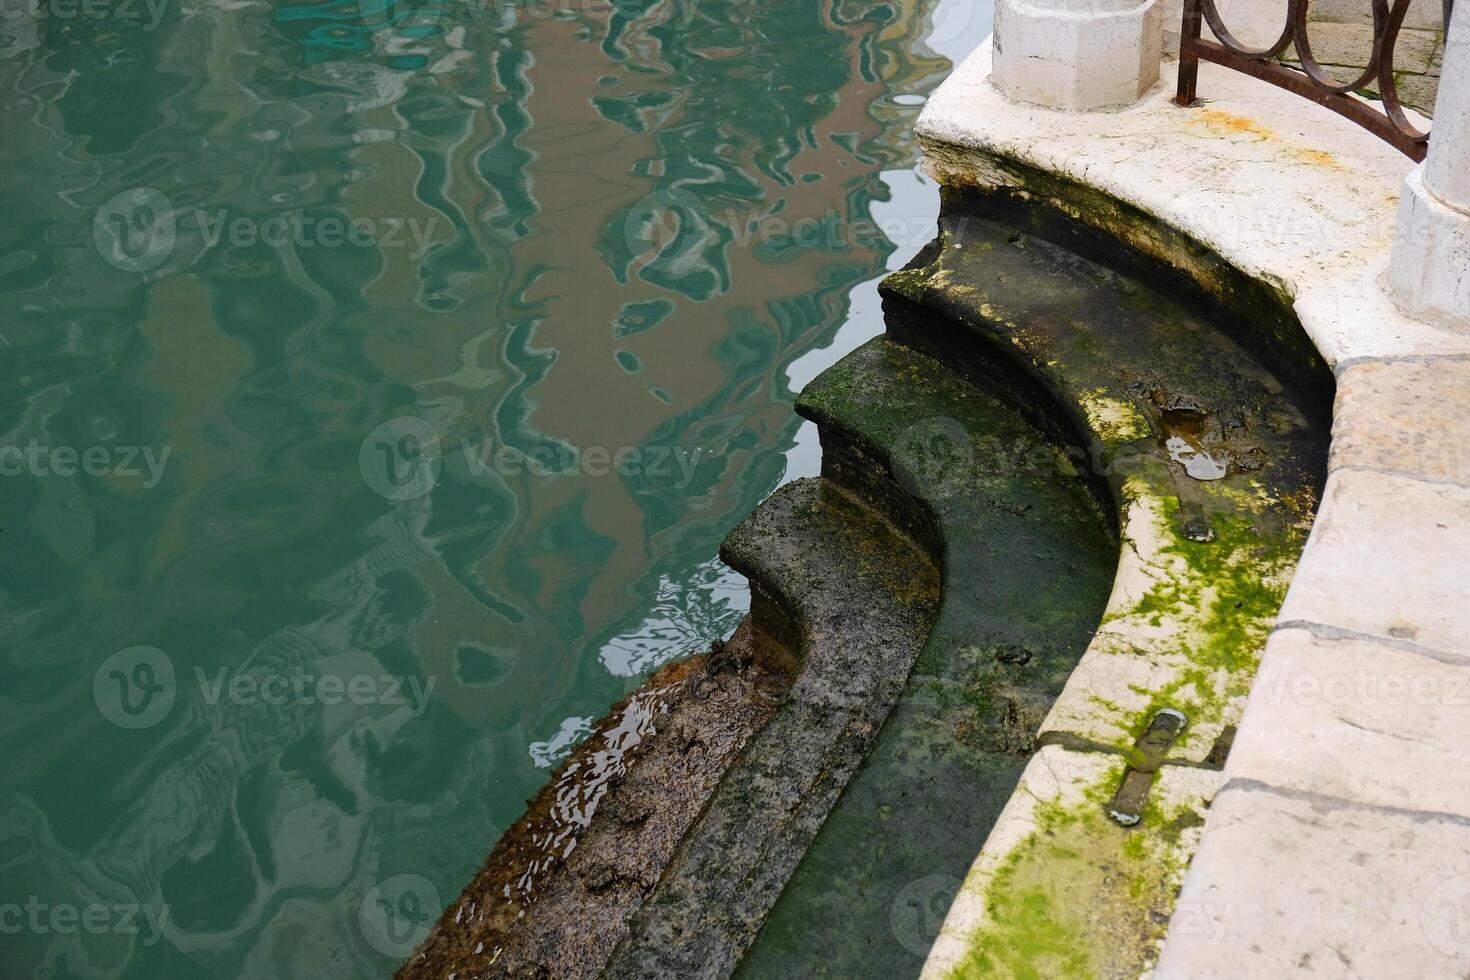 sten trappa täckt med alger längs en kanal under låg tidvatten i Venedig i Italien. grön kanal vatten. sjunkande Venedig. foto